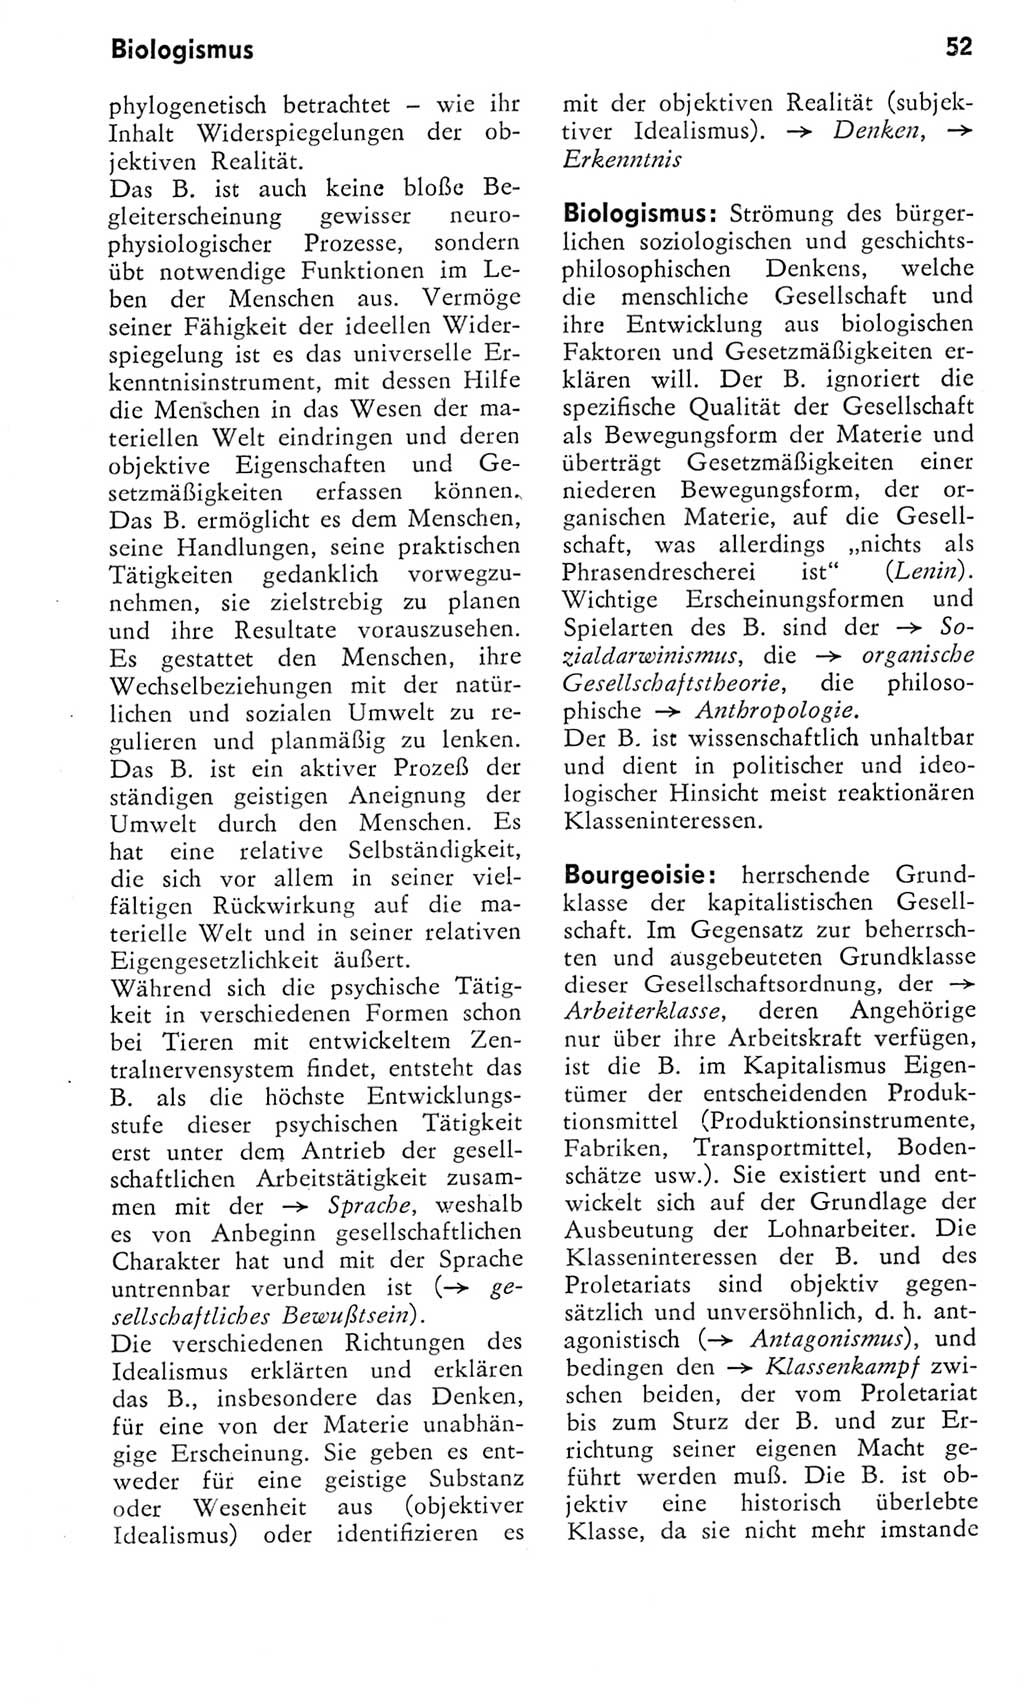 Kleines Wörterbuch der marxistisch-leninistischen Philosophie [Deutsche Demokratische Republik (DDR)] 1975, Seite 52 (Kl. Wb. ML Phil. DDR 1975, S. 52)